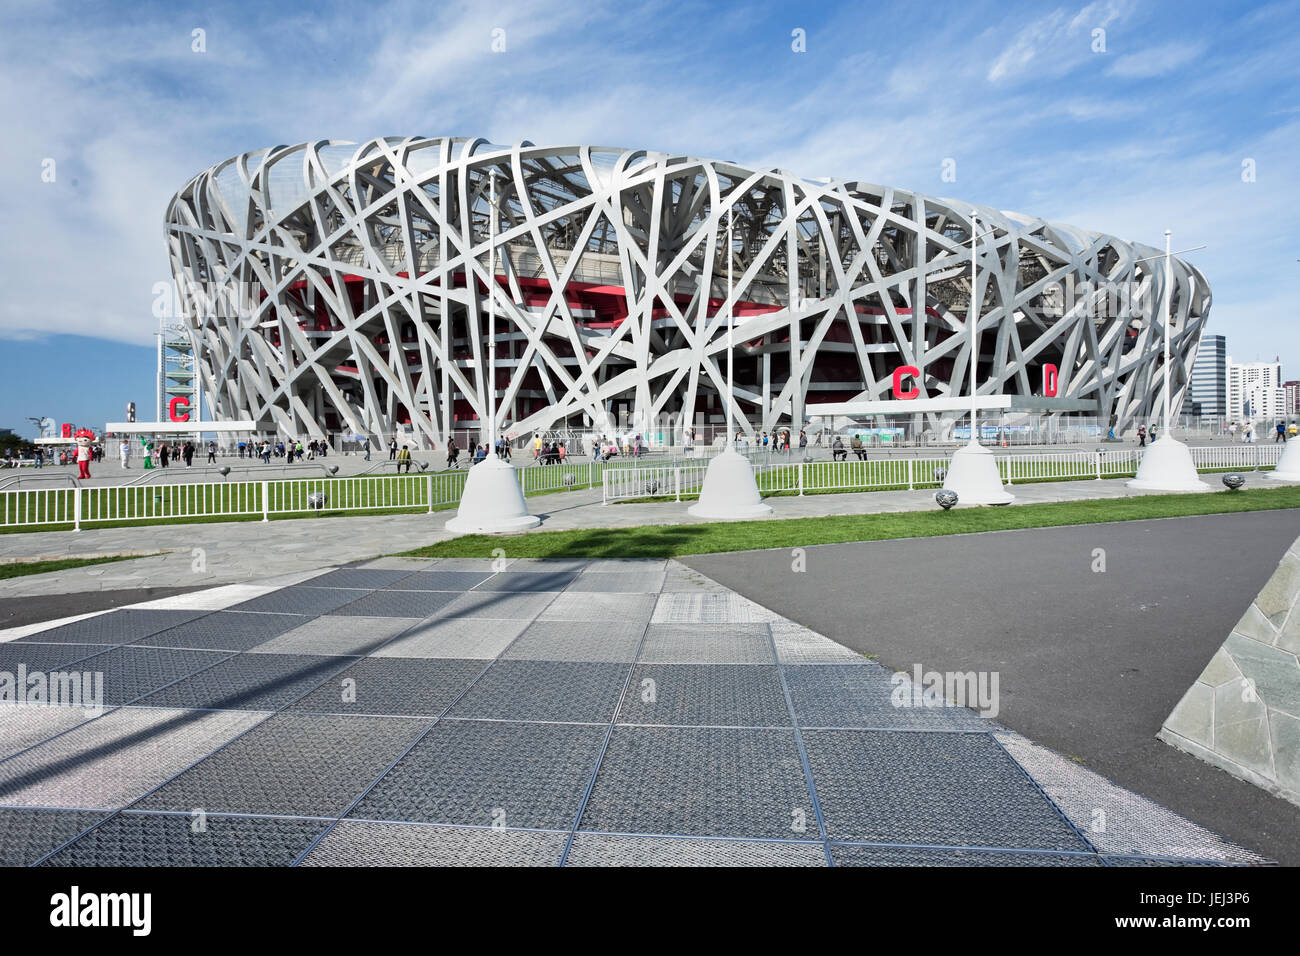 PECHINO - SETTEMBRE 17. Nido d'uccello di giorno. Il Bird's Nest è uno stadio di Pechino, Cina. È stato progettato per le Olimpiadi estive del 2008 Foto Stock